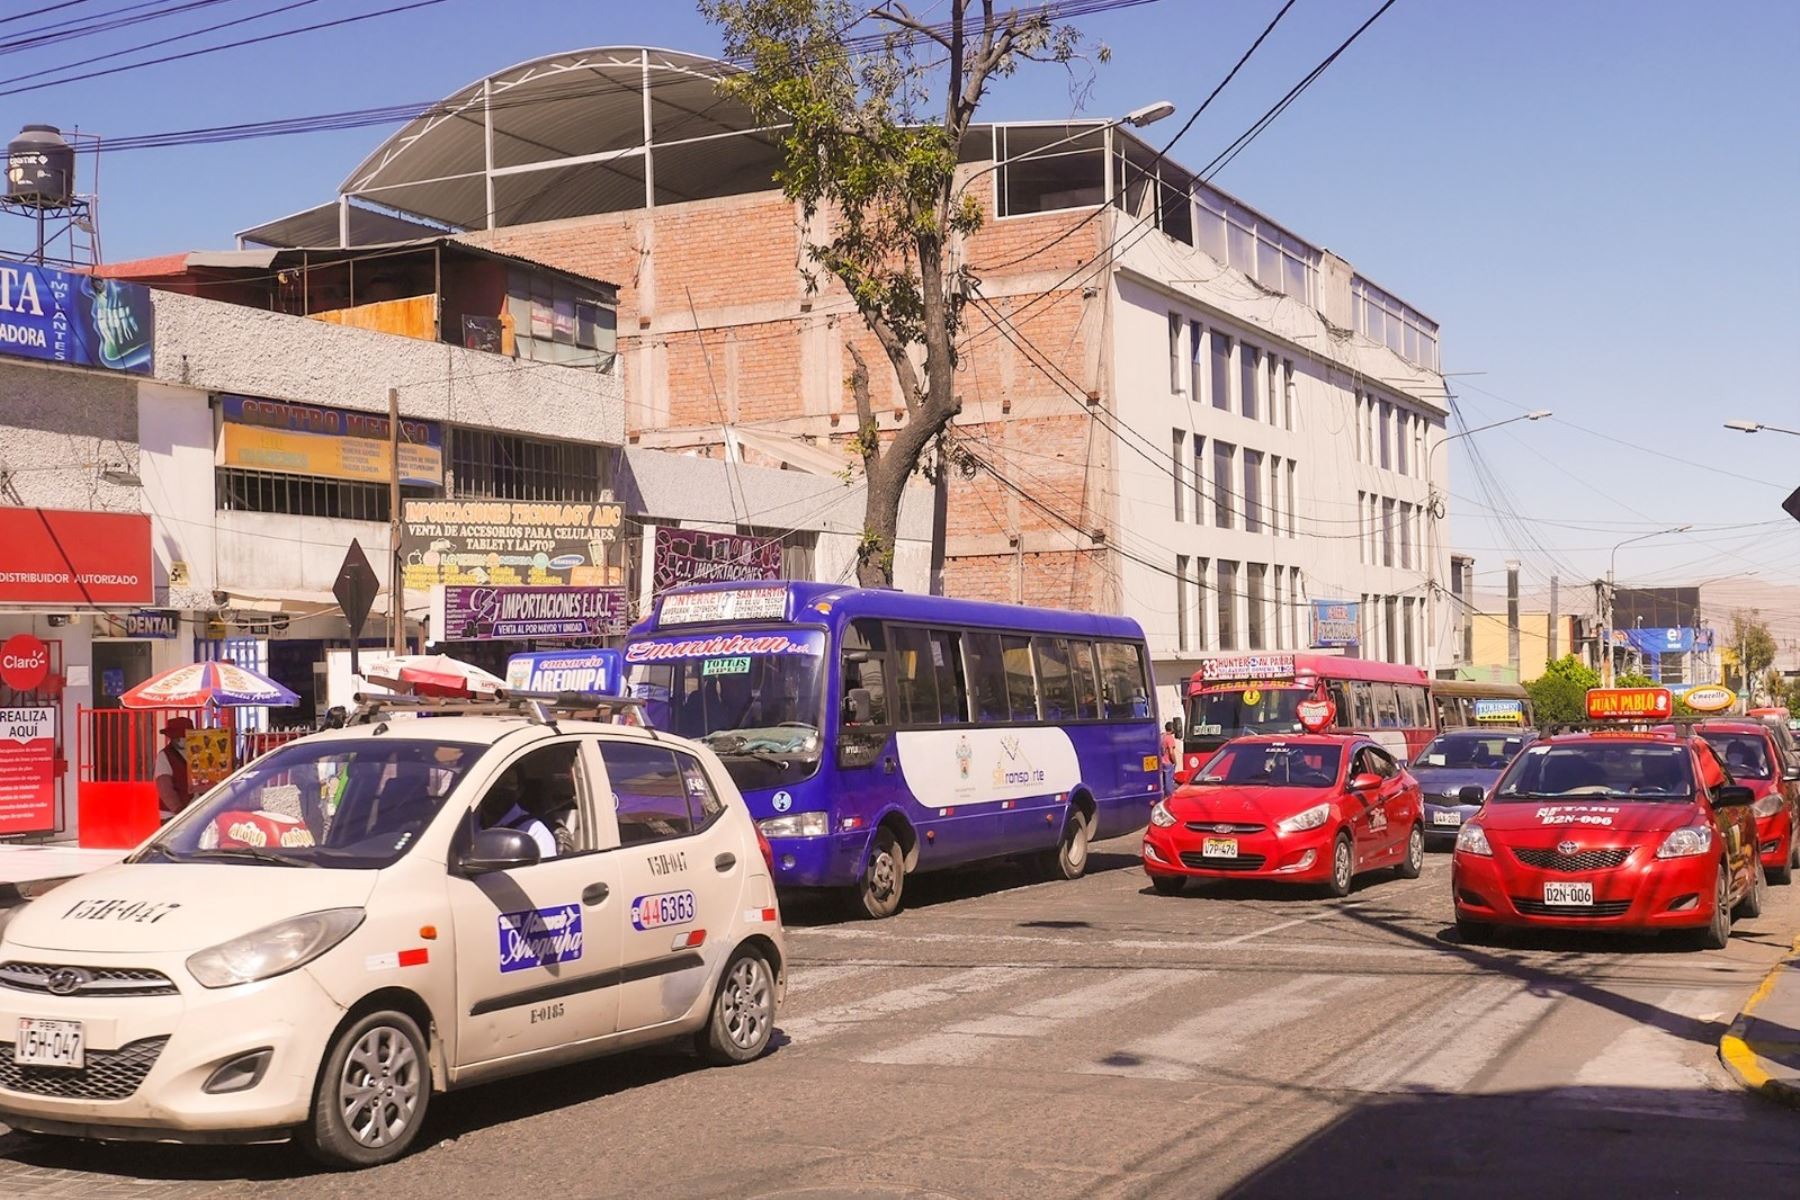 Convenio marco entre el MTC y el gobierno local permitirá mejorar el transporte urbano en la ciudad de Arequipa. Foto: MTC/Difusión.